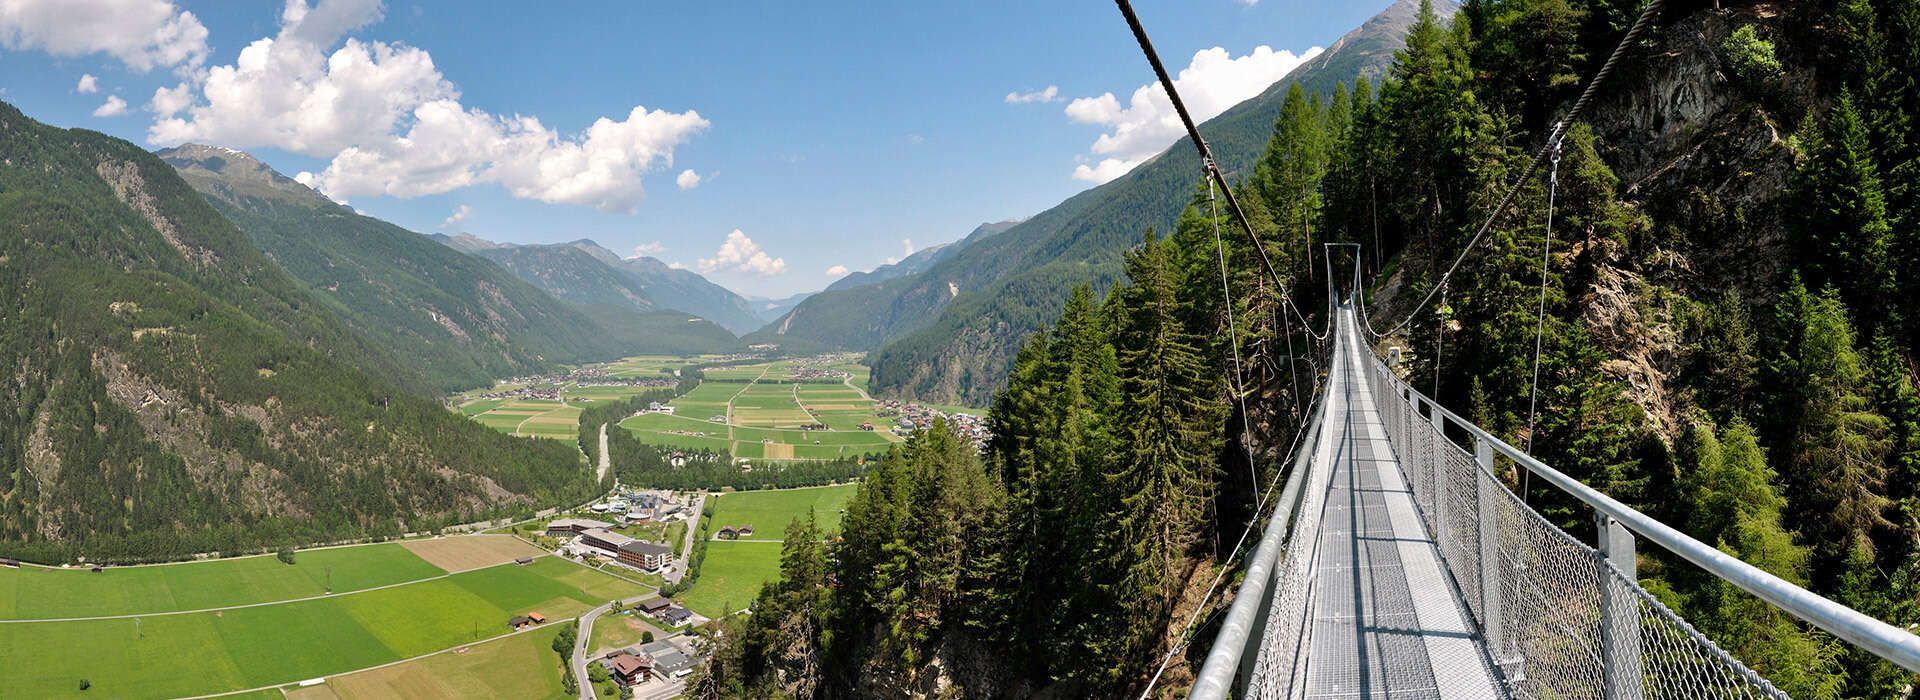 Hängebrücke mit Ausblick auf Längenfeld und ins Ötztal